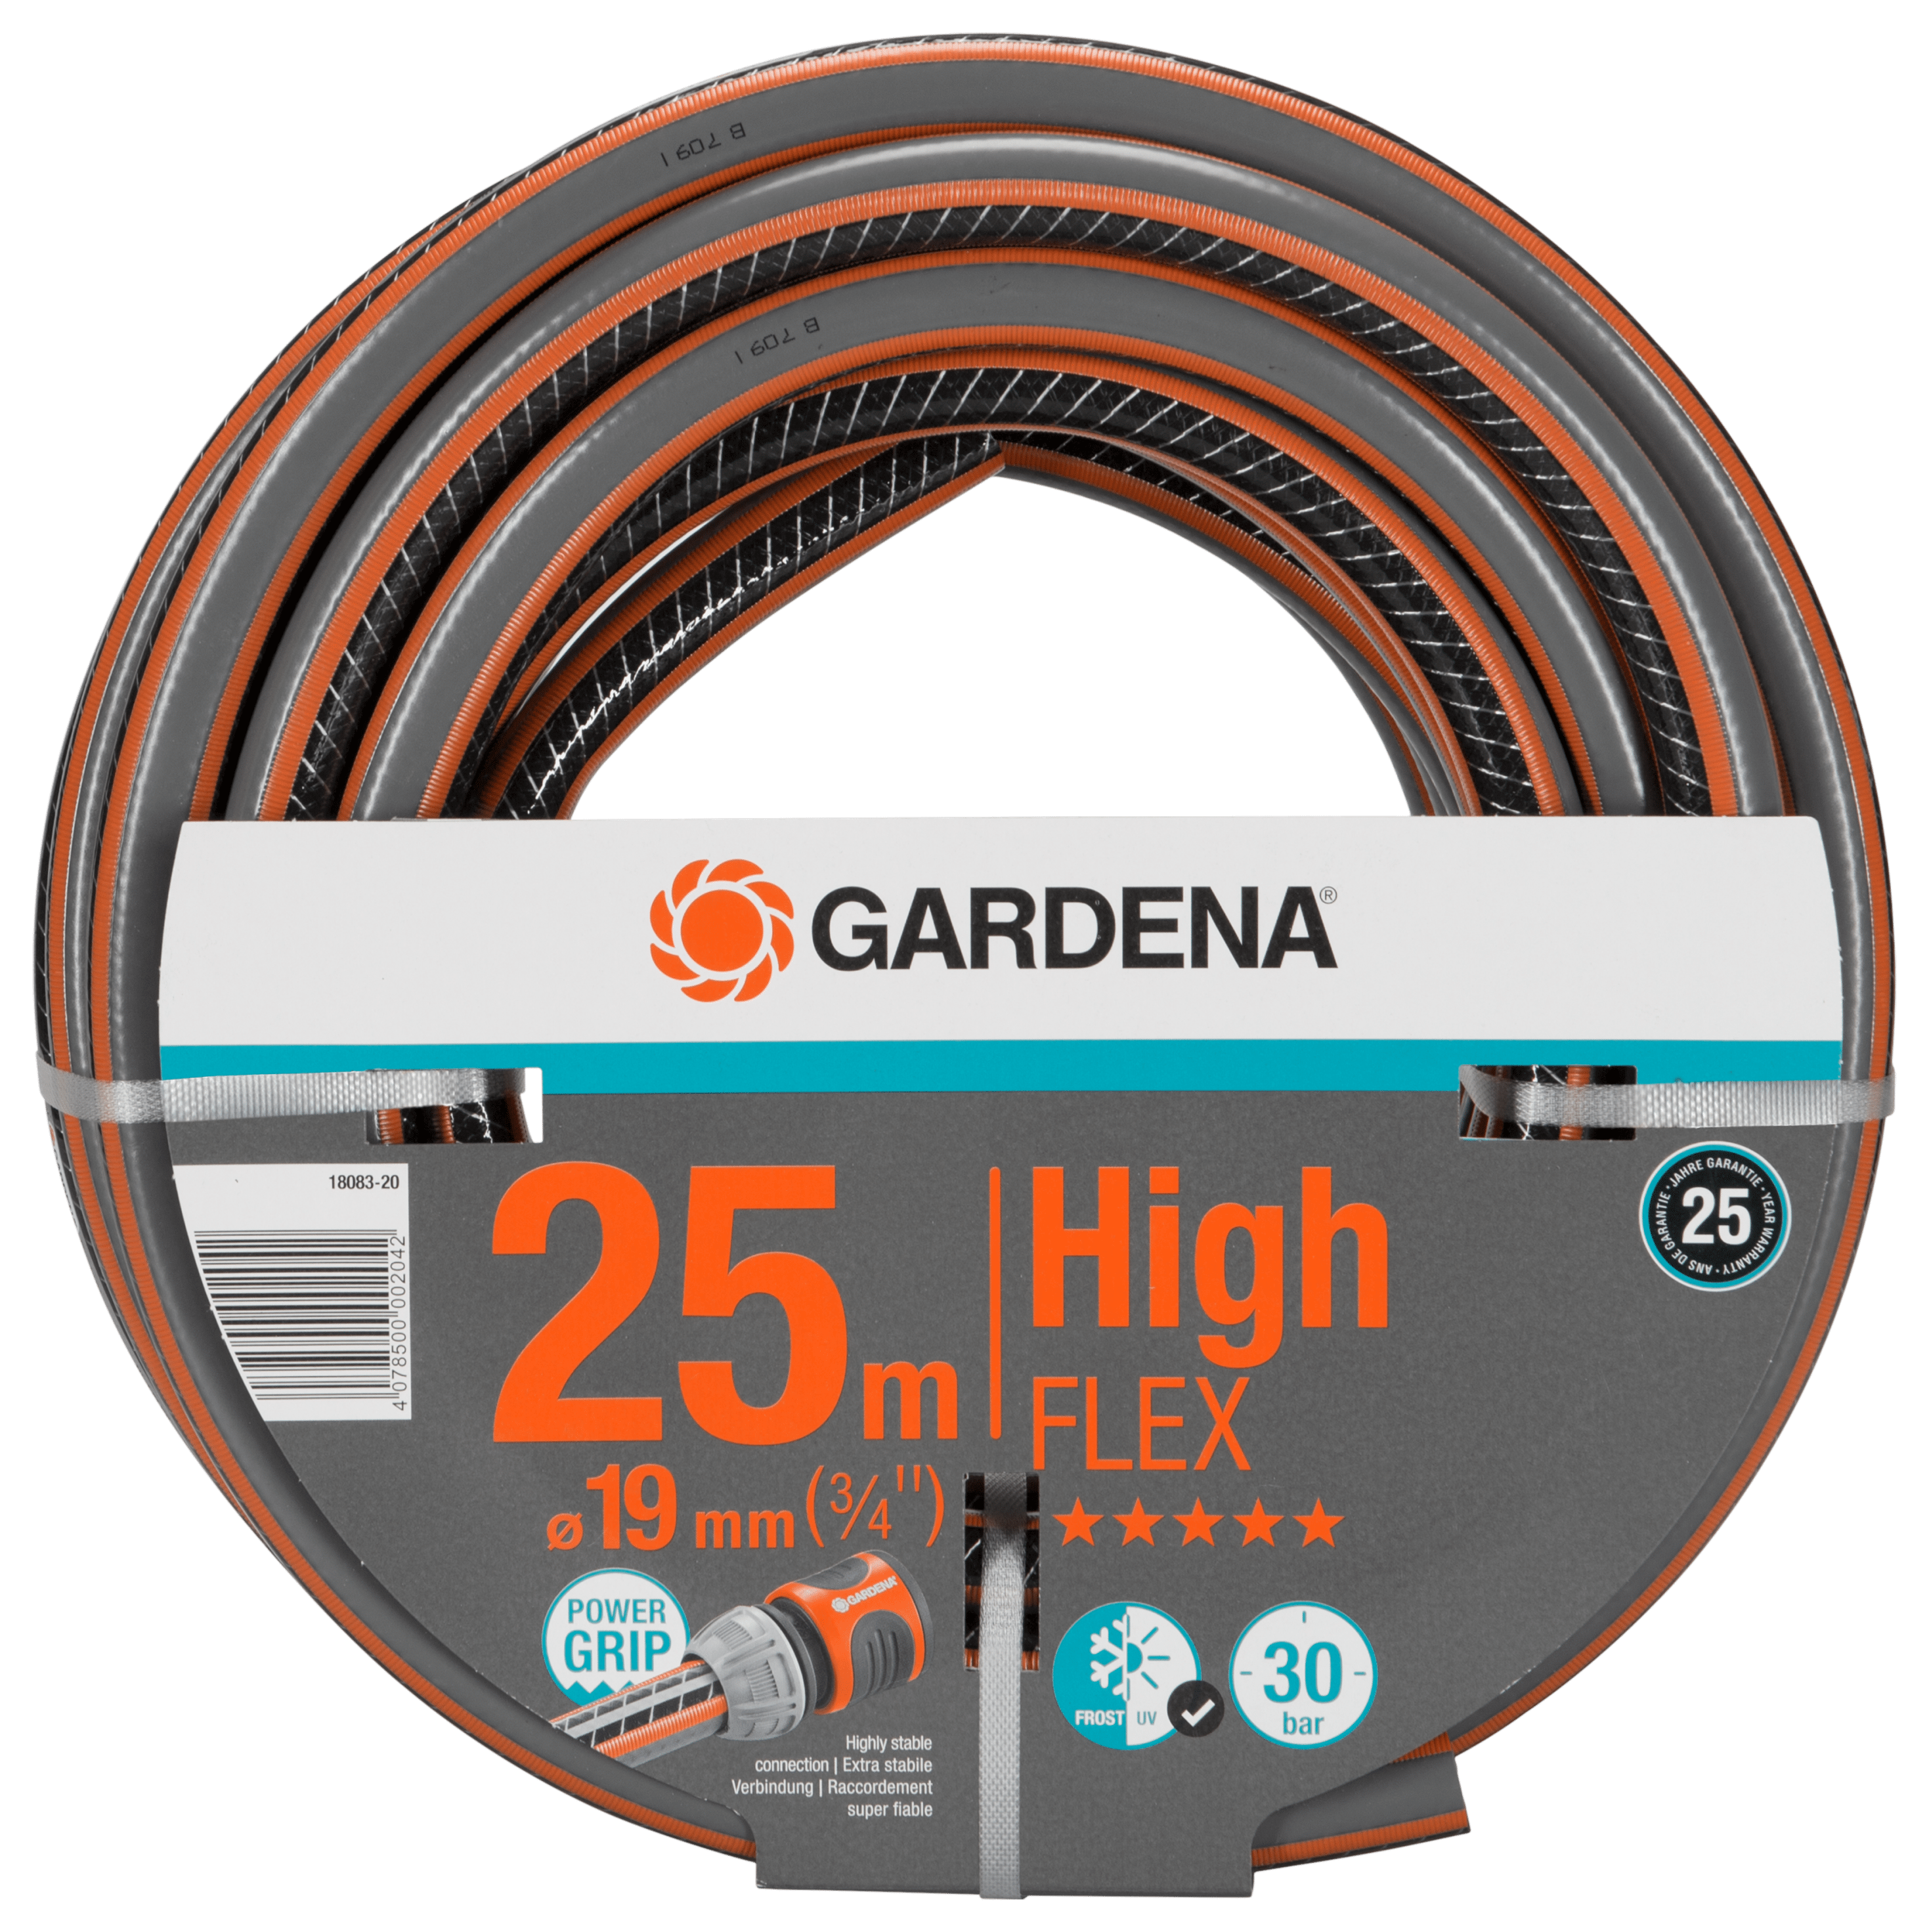 5 Jahre Garantie schwänlein HighFlex Universeller Gartenschlauch 19 mm 3/4” 20m UV und Frost beständiger Qualitätsschlauch | 25 bar Berstdruck Schadstofffrei 